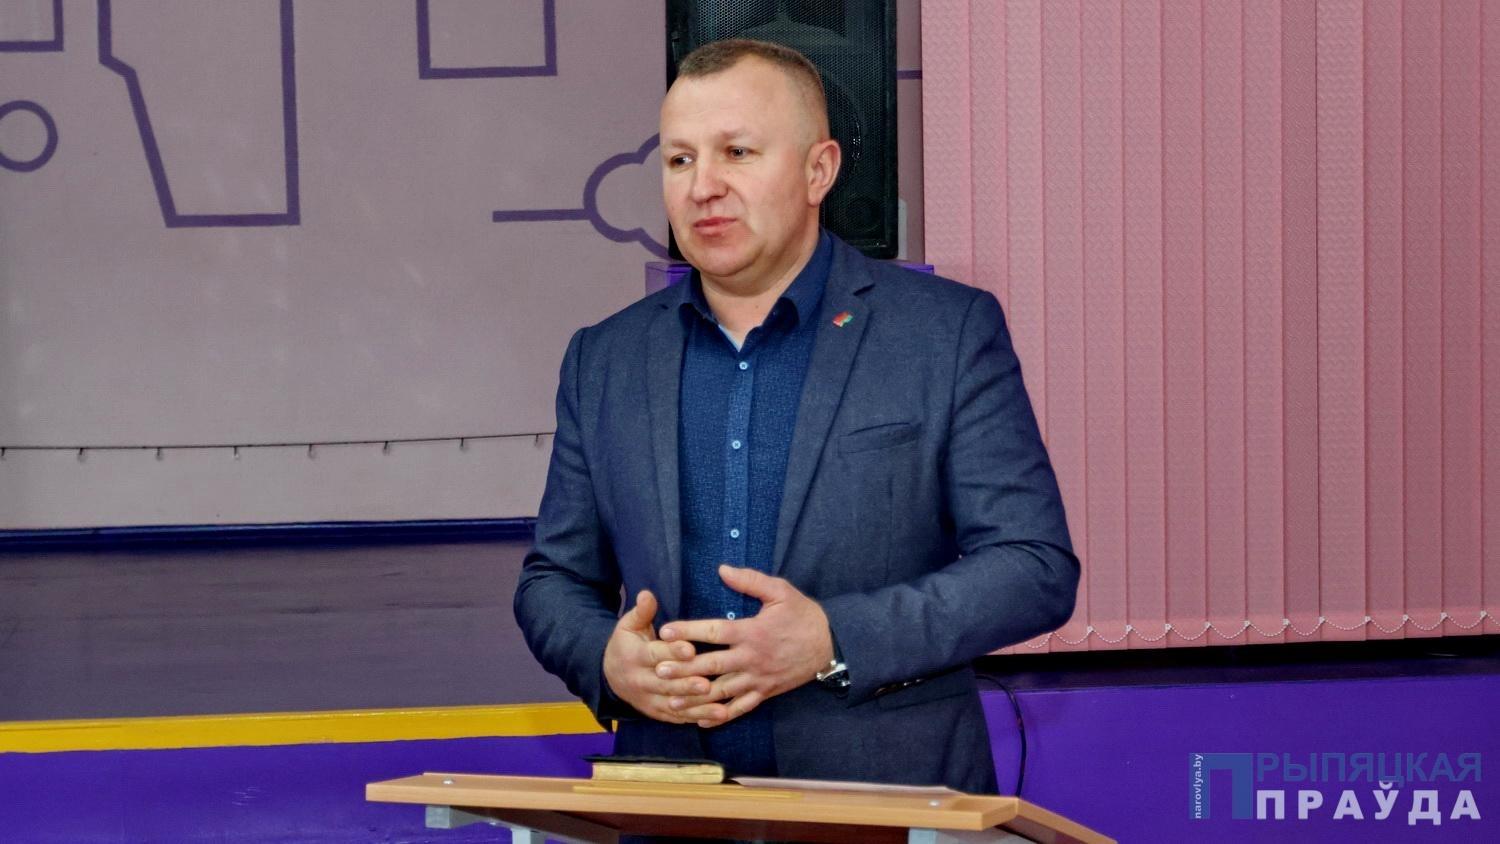 Председатель Наровлянского райисполкома встретился с педагогами СШ № 3